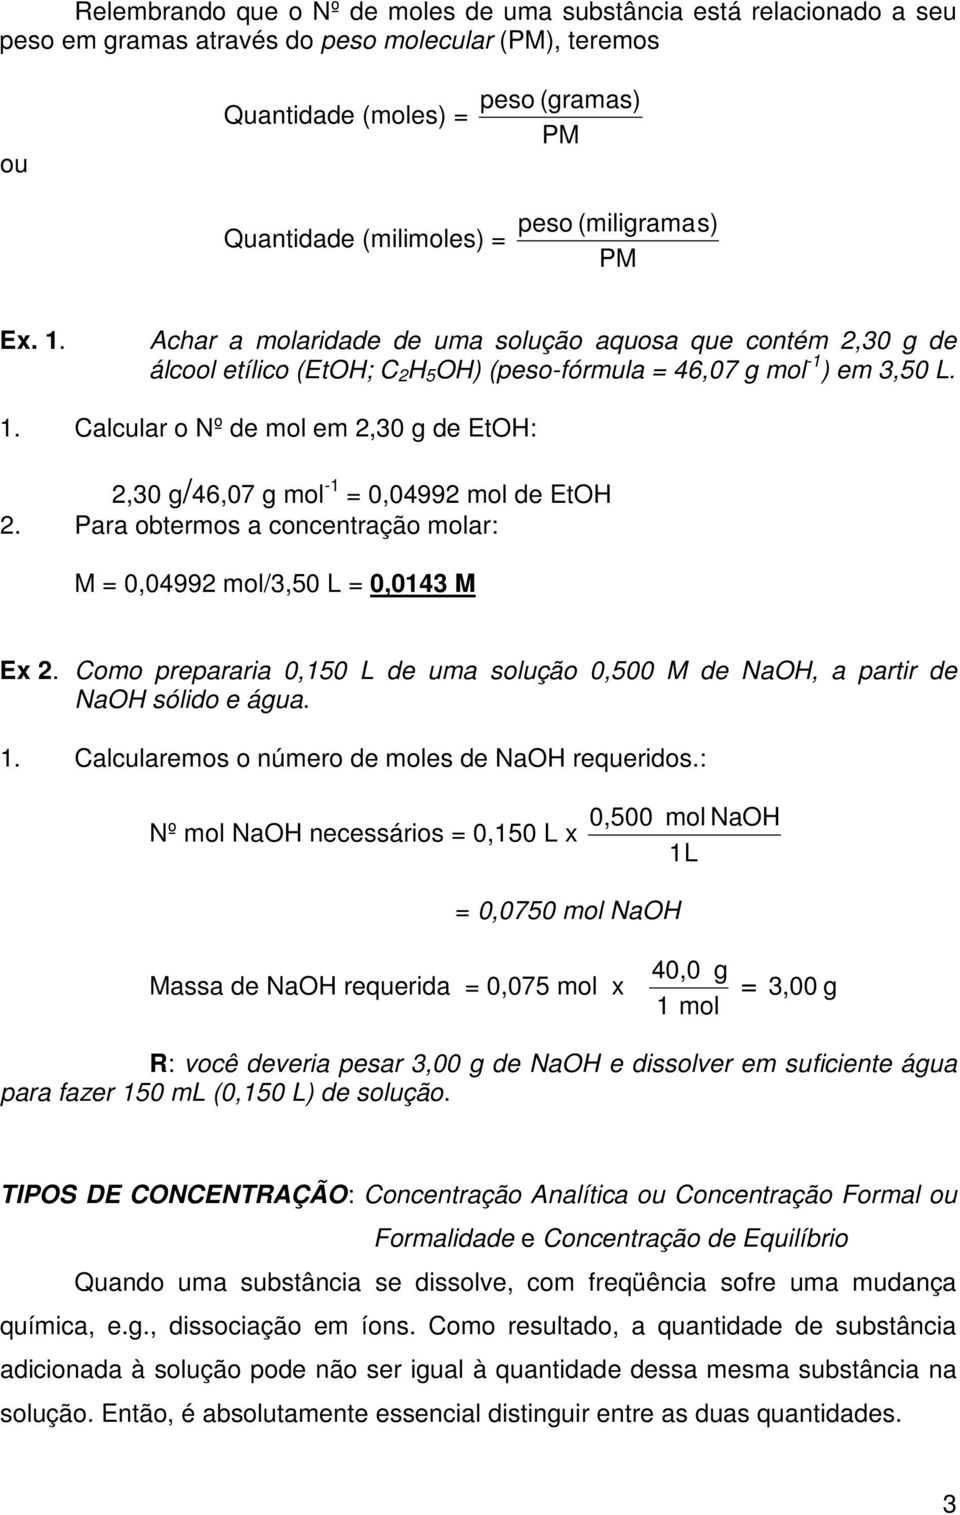 Para obtermos a concentração molar: M = 0,04992 mol/3,50 L = 0,0143 M Ex 2. Como prepararia 0,150 L de uma solução 0,500 M de NaOH, a partir de NaOH sólido e água. 1.